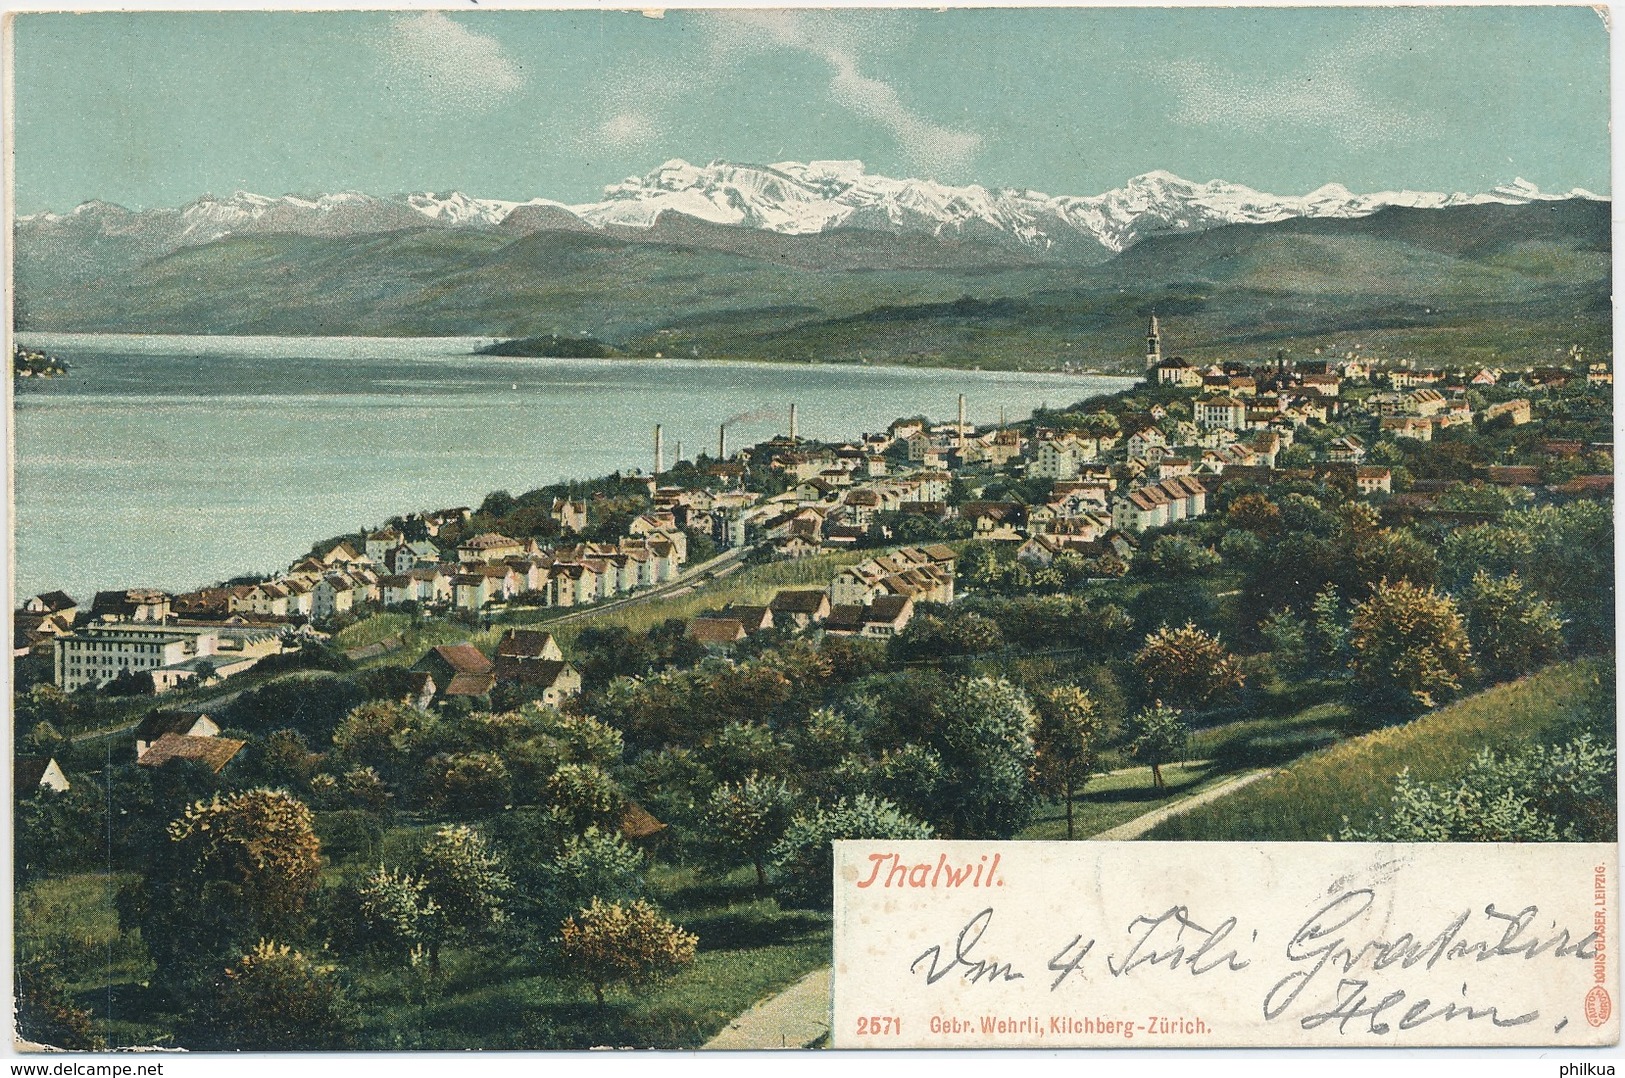 1908 - Thalwil - Gebr. Wehrli, Kilchberg-Zürich - 2571 - Kilchberg